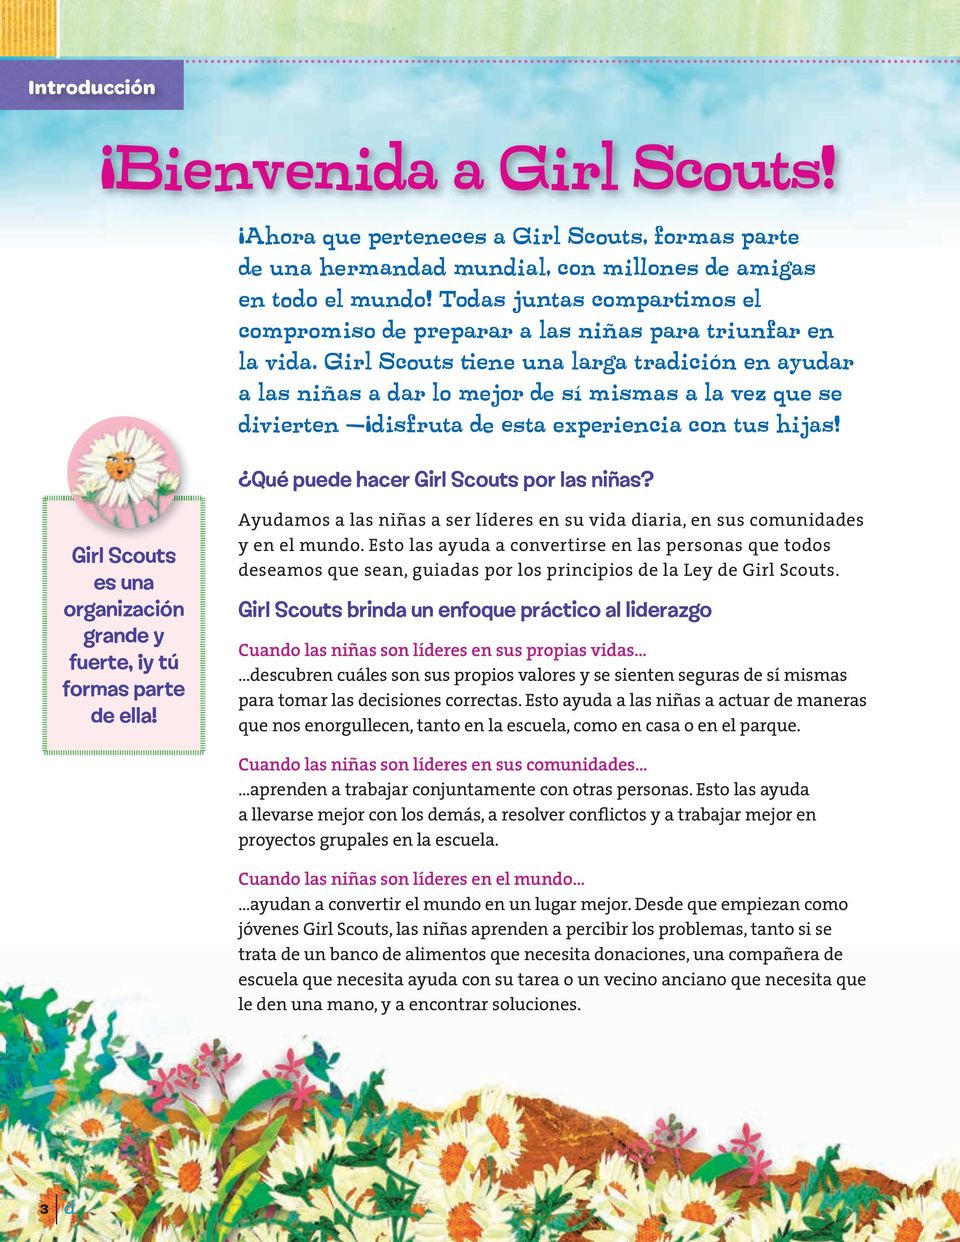 Girl Scouts tiene una larga tradición en ayudar a las niñas a dar lo mejor de sí mismas a la vez que se divierten disfruta de esta experiencia con tus hijas! Qué puede hacer Girl Scouts por las niñas?